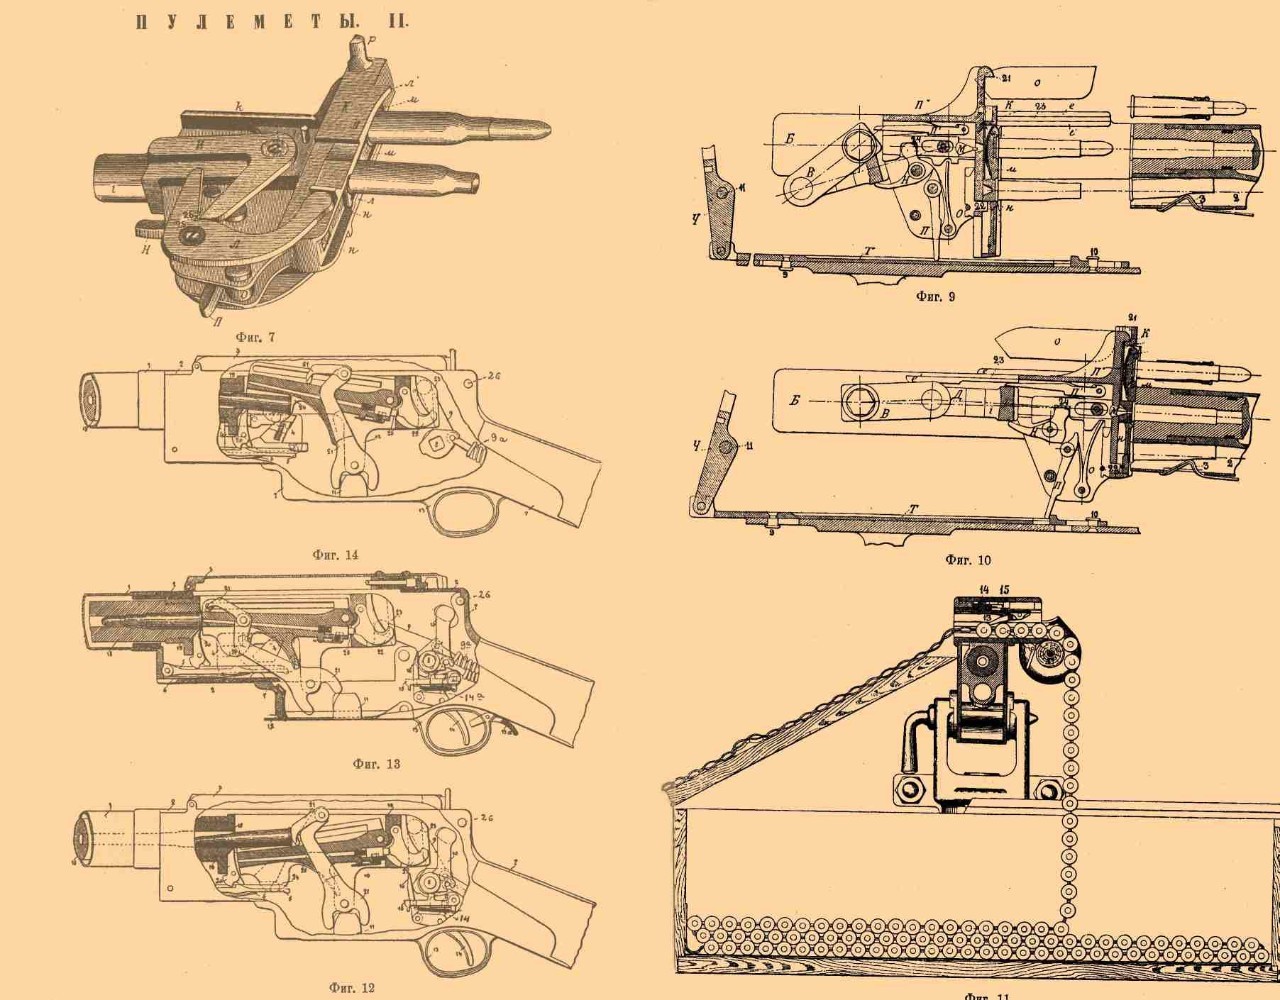 麦德森机枪的自动原理比较特殊,为枪管长后坐式,枪管后退的行程较大